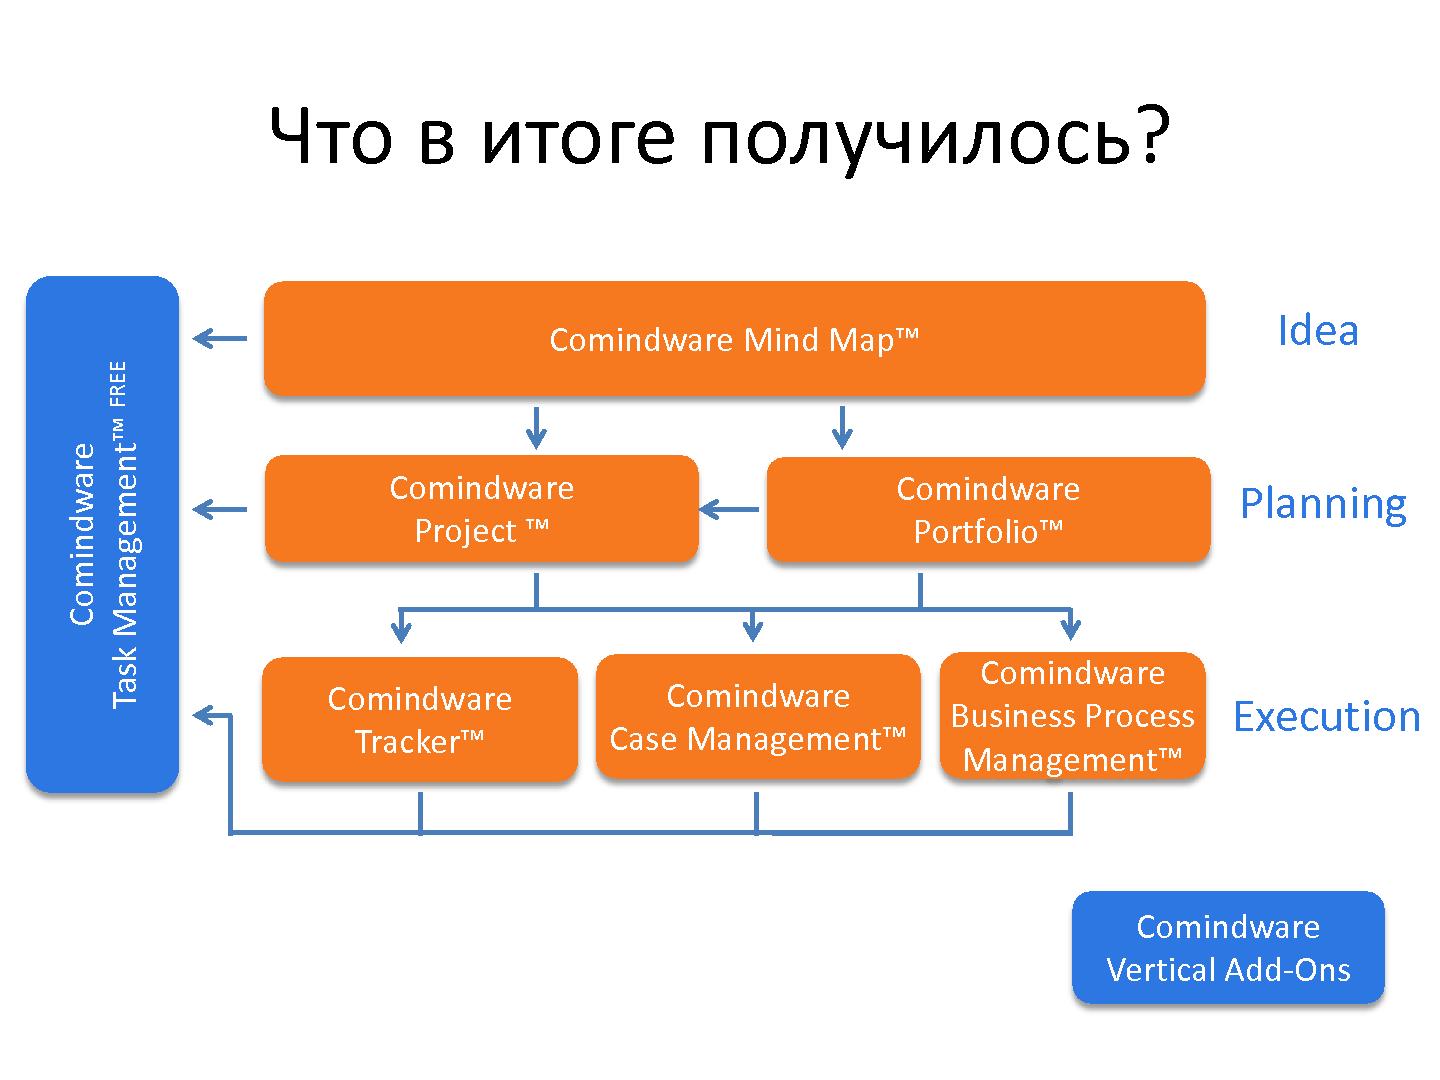 Файл:Проектирование продуктового портфеля на примере Comindware (Константин Бредюк, ProductCampSPB-2012).pdf